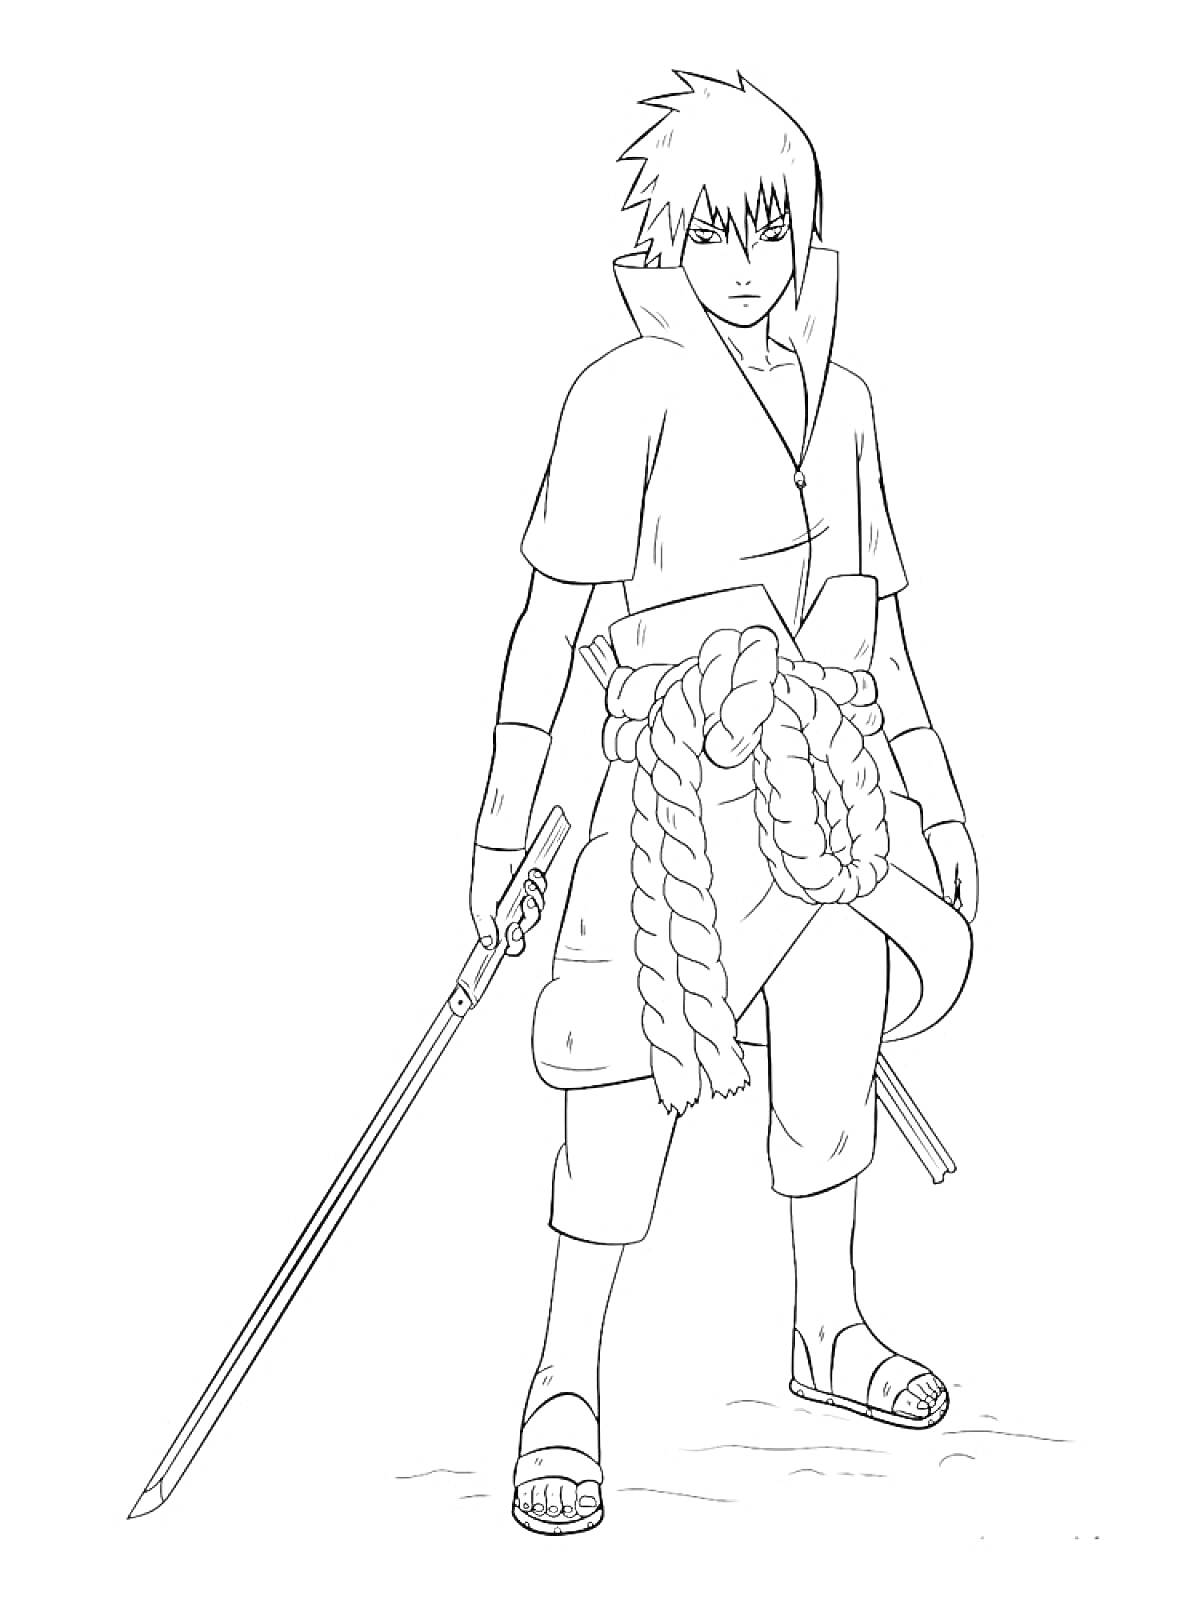 Саске Учиха с мечом, стоящий в полный рост